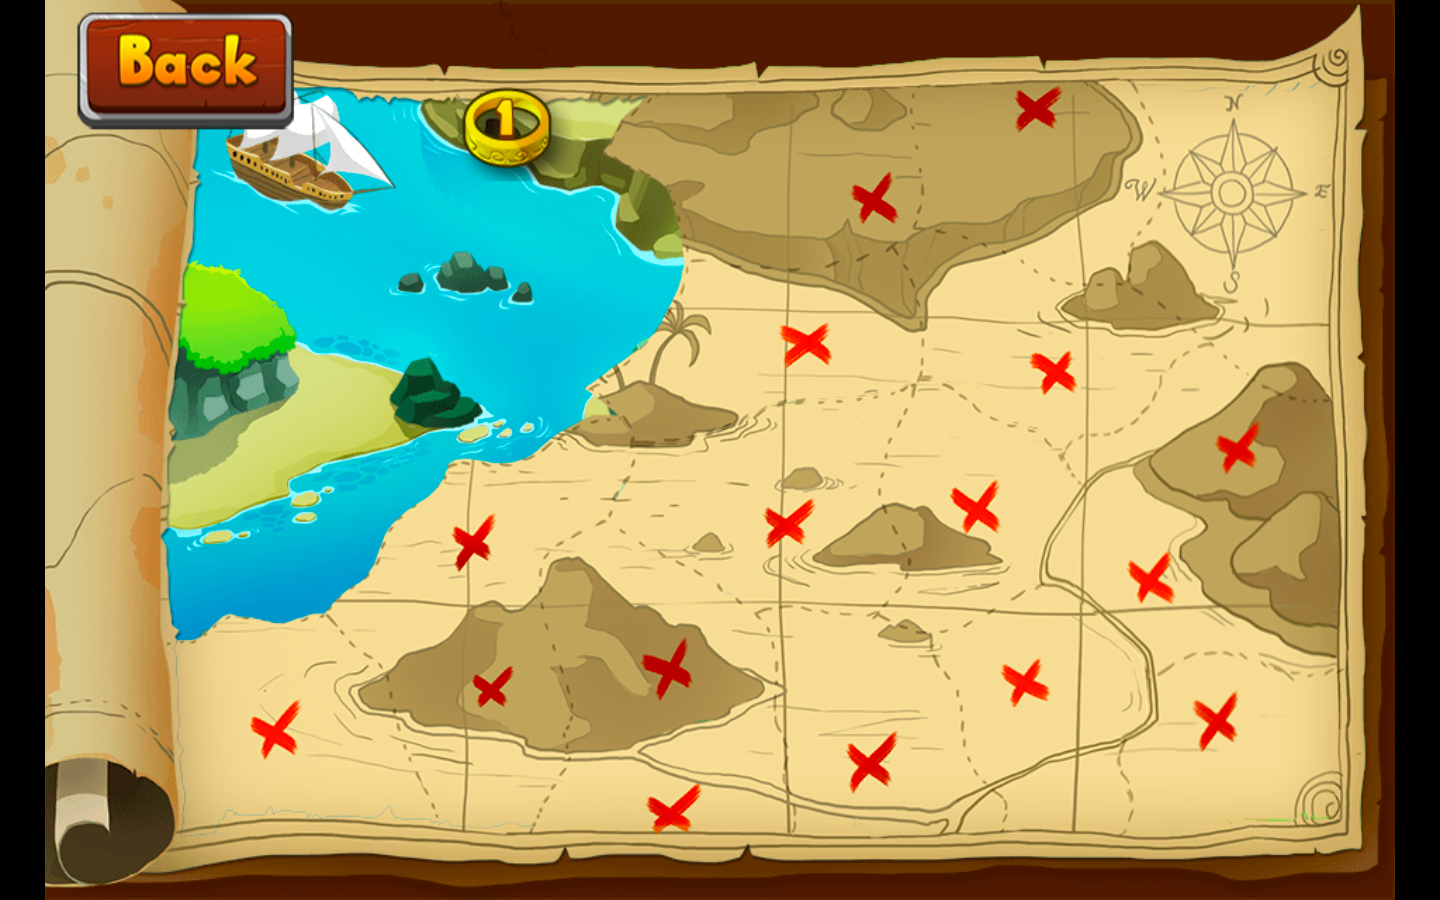 Sea Treasure игра. Сокровища мистического моря 3. Остров сокровищ игра. Карта сокровищ. Игра пираты восстановить